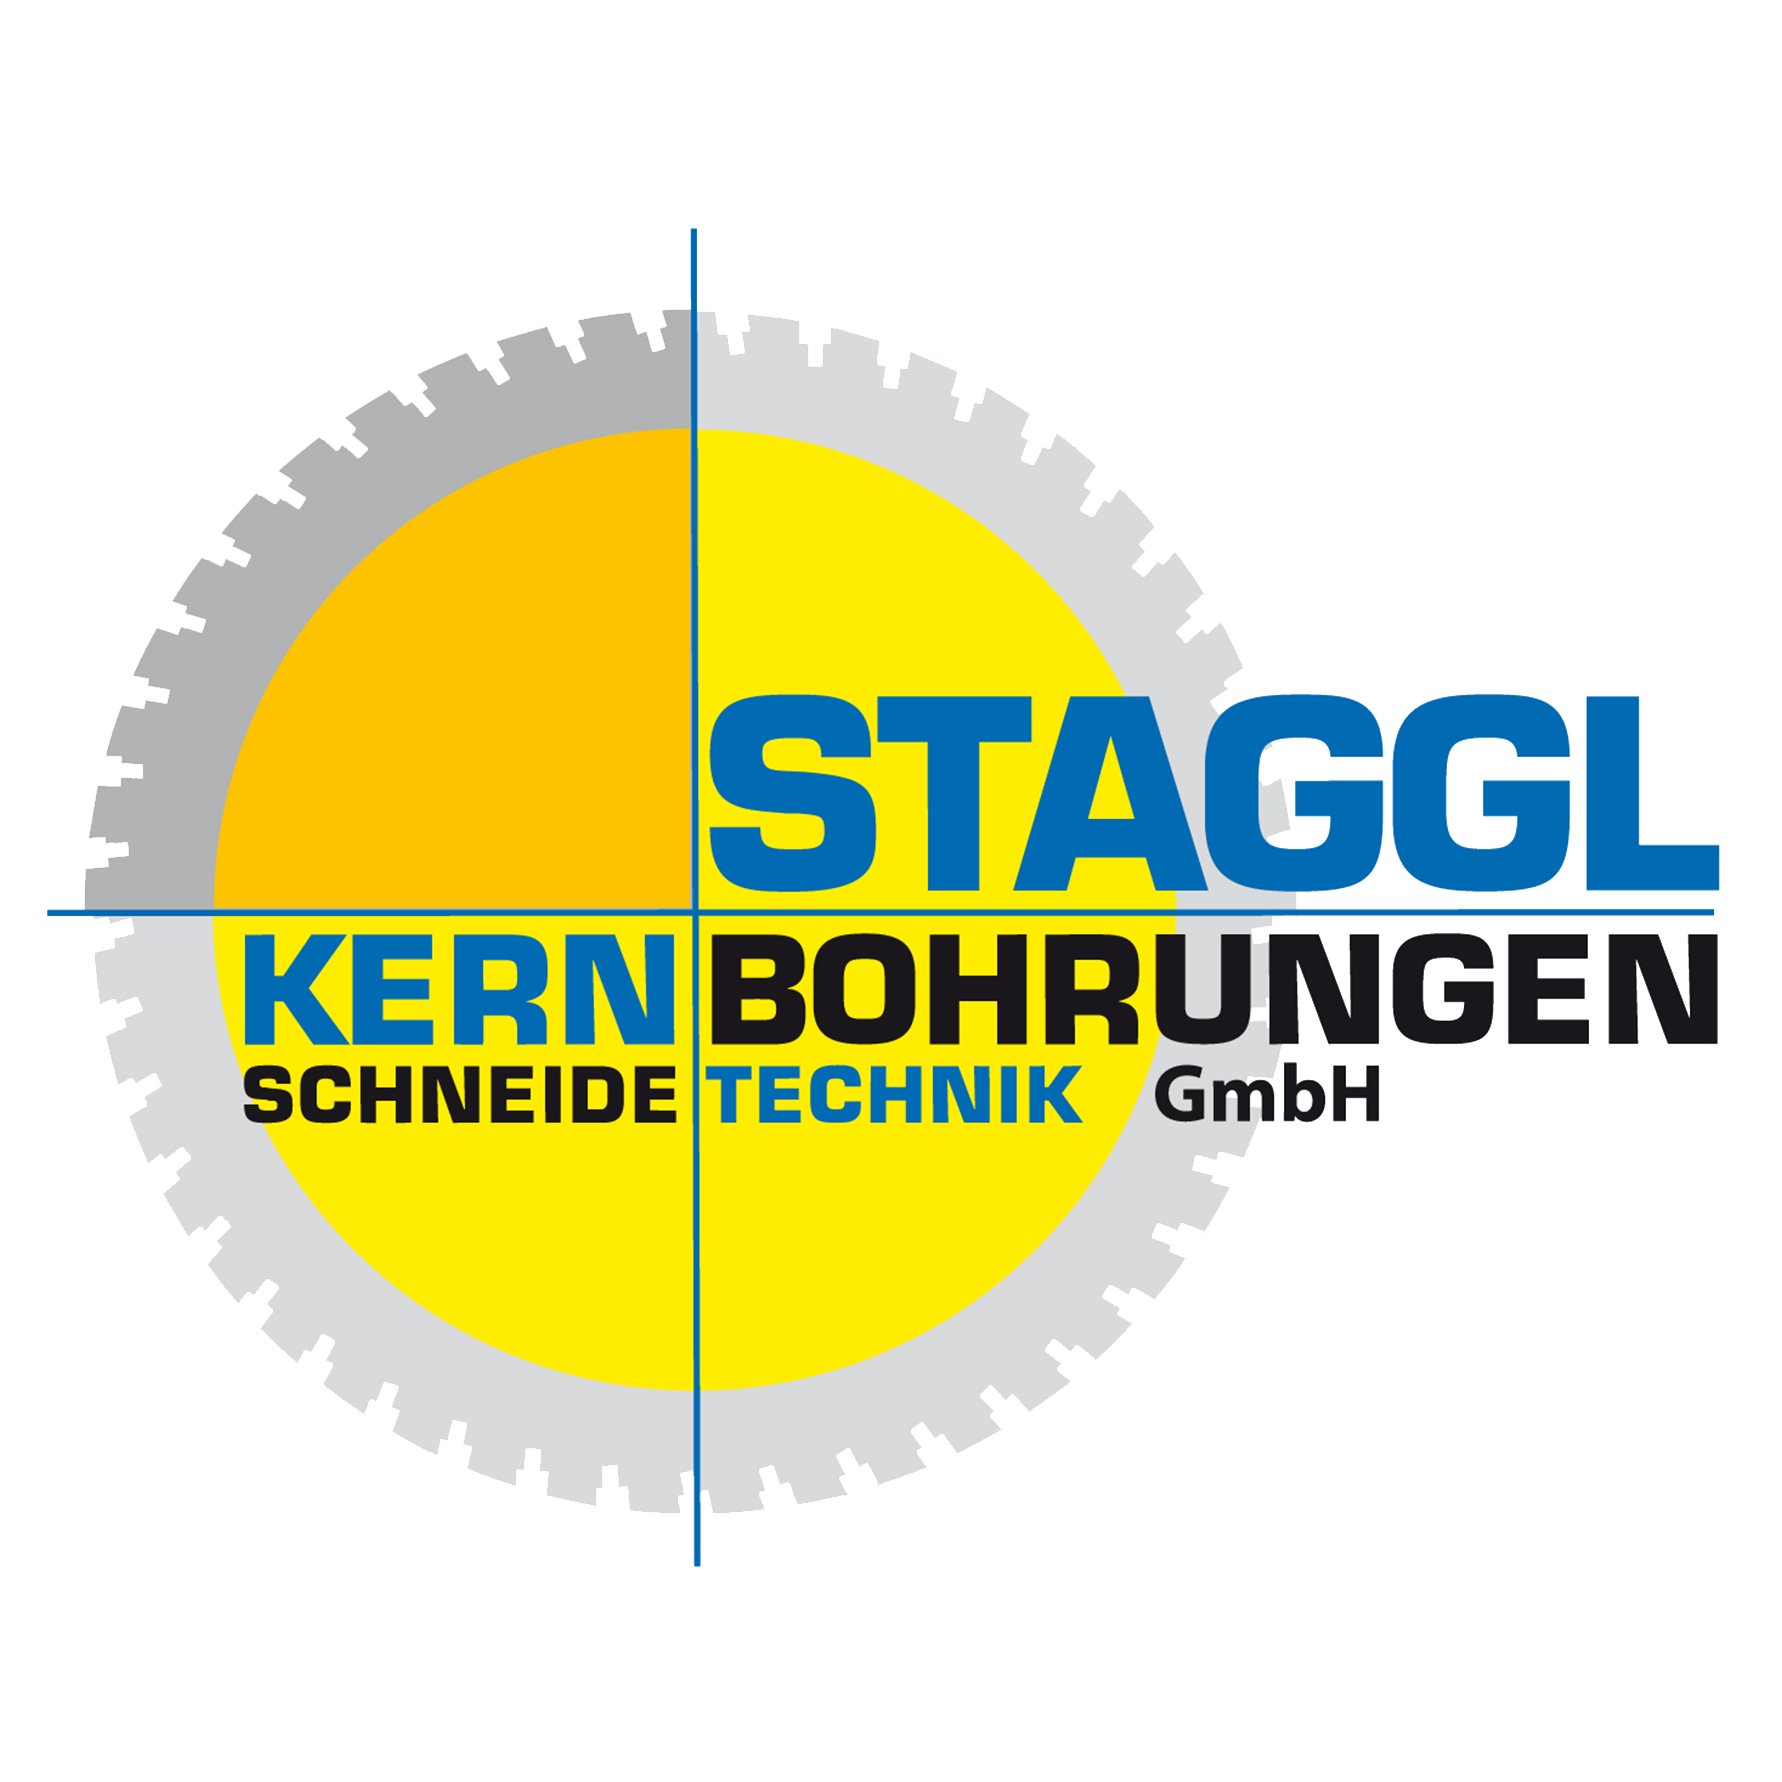 Staggl Kernbohrungen u Schneidetechnik GmbH 6471 Arzl im Pitztal